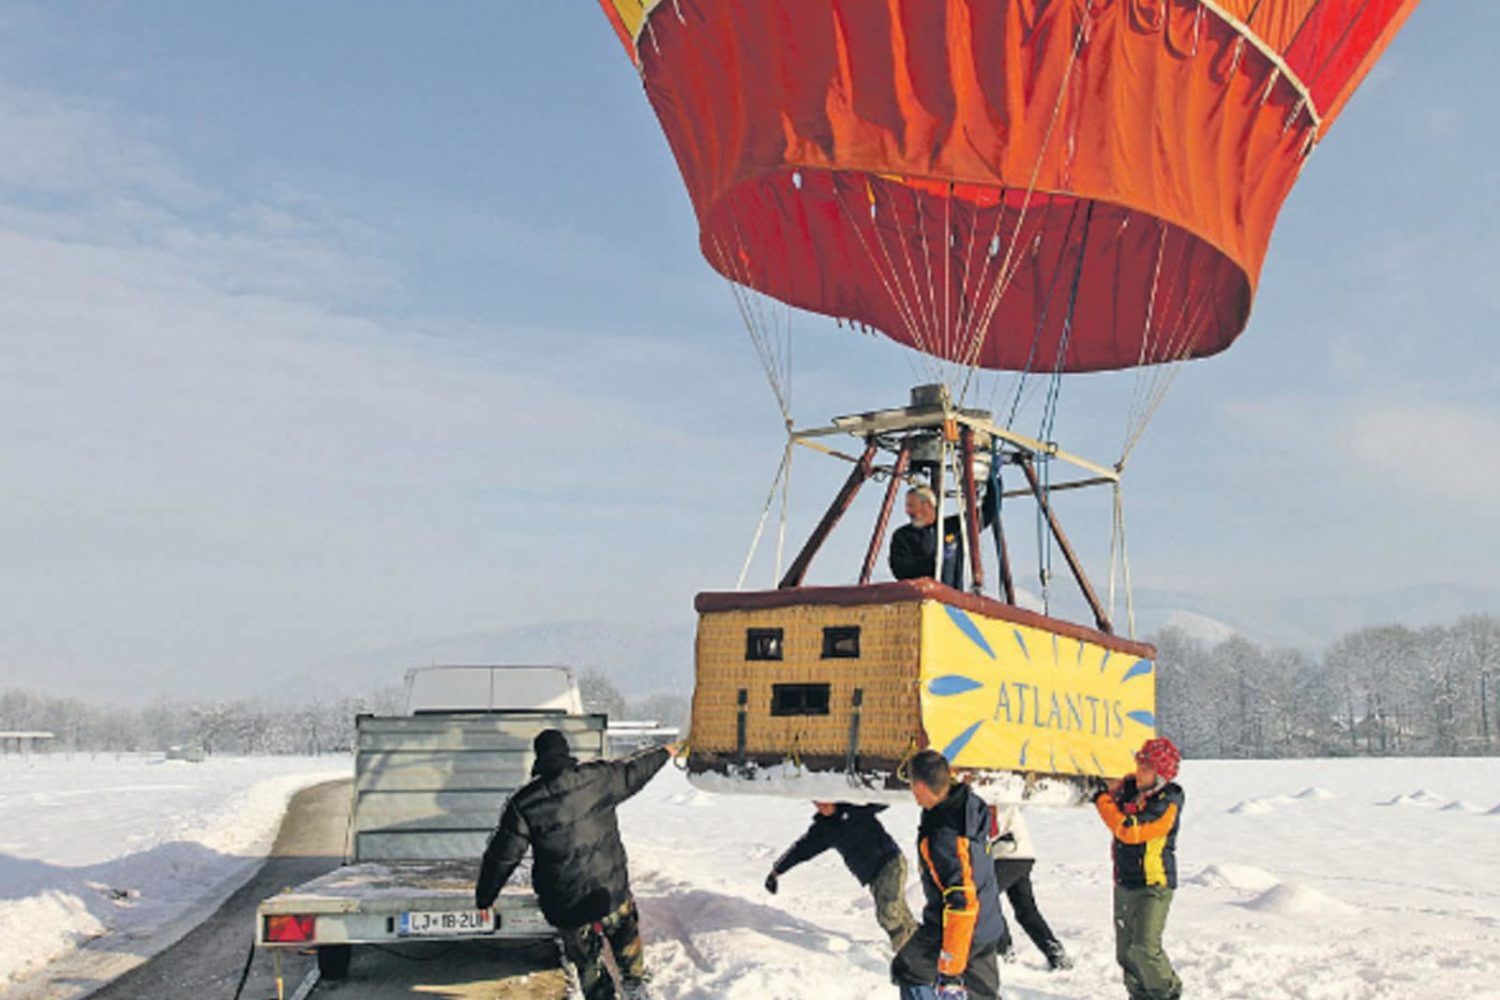 Winter balloon flight